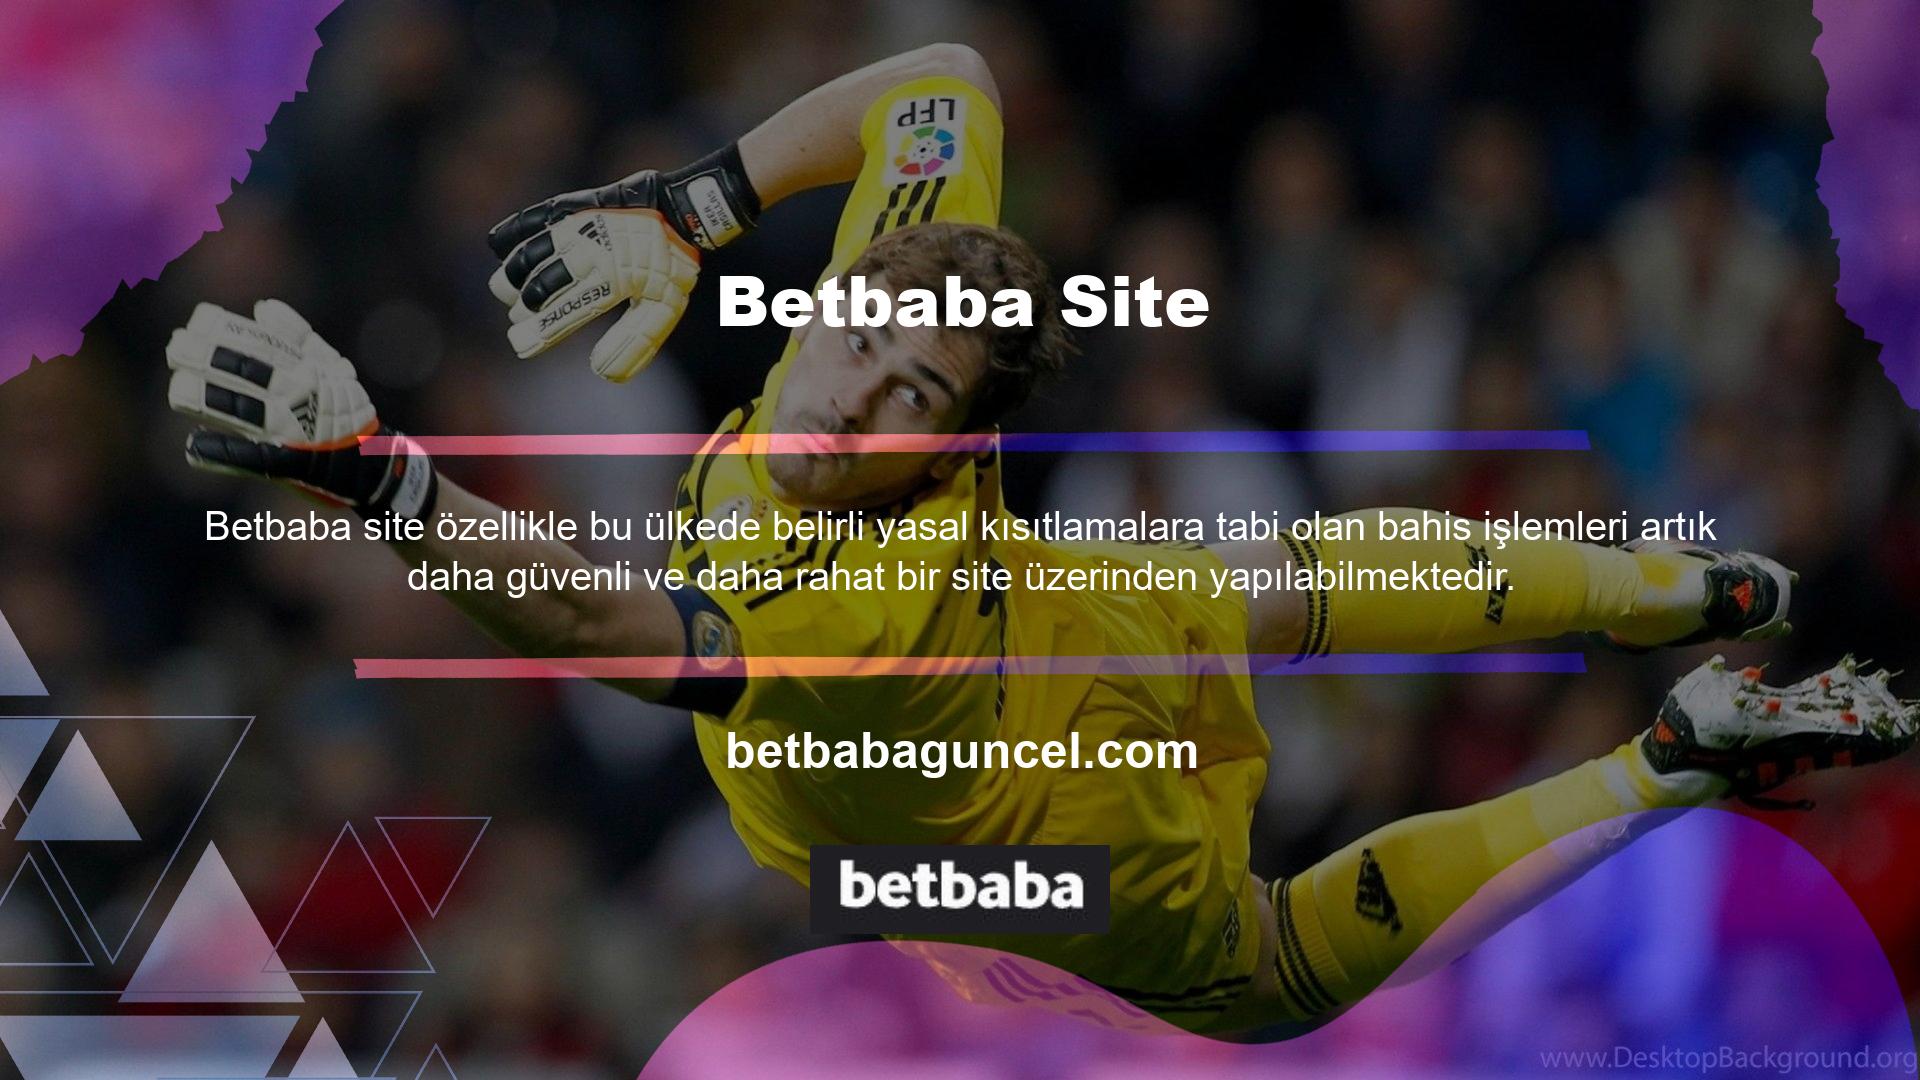 Betbaba Casino web sitemiz, size harika canlı casino fırsatları sunmanın verimli ve eğlenceli bir yoludur